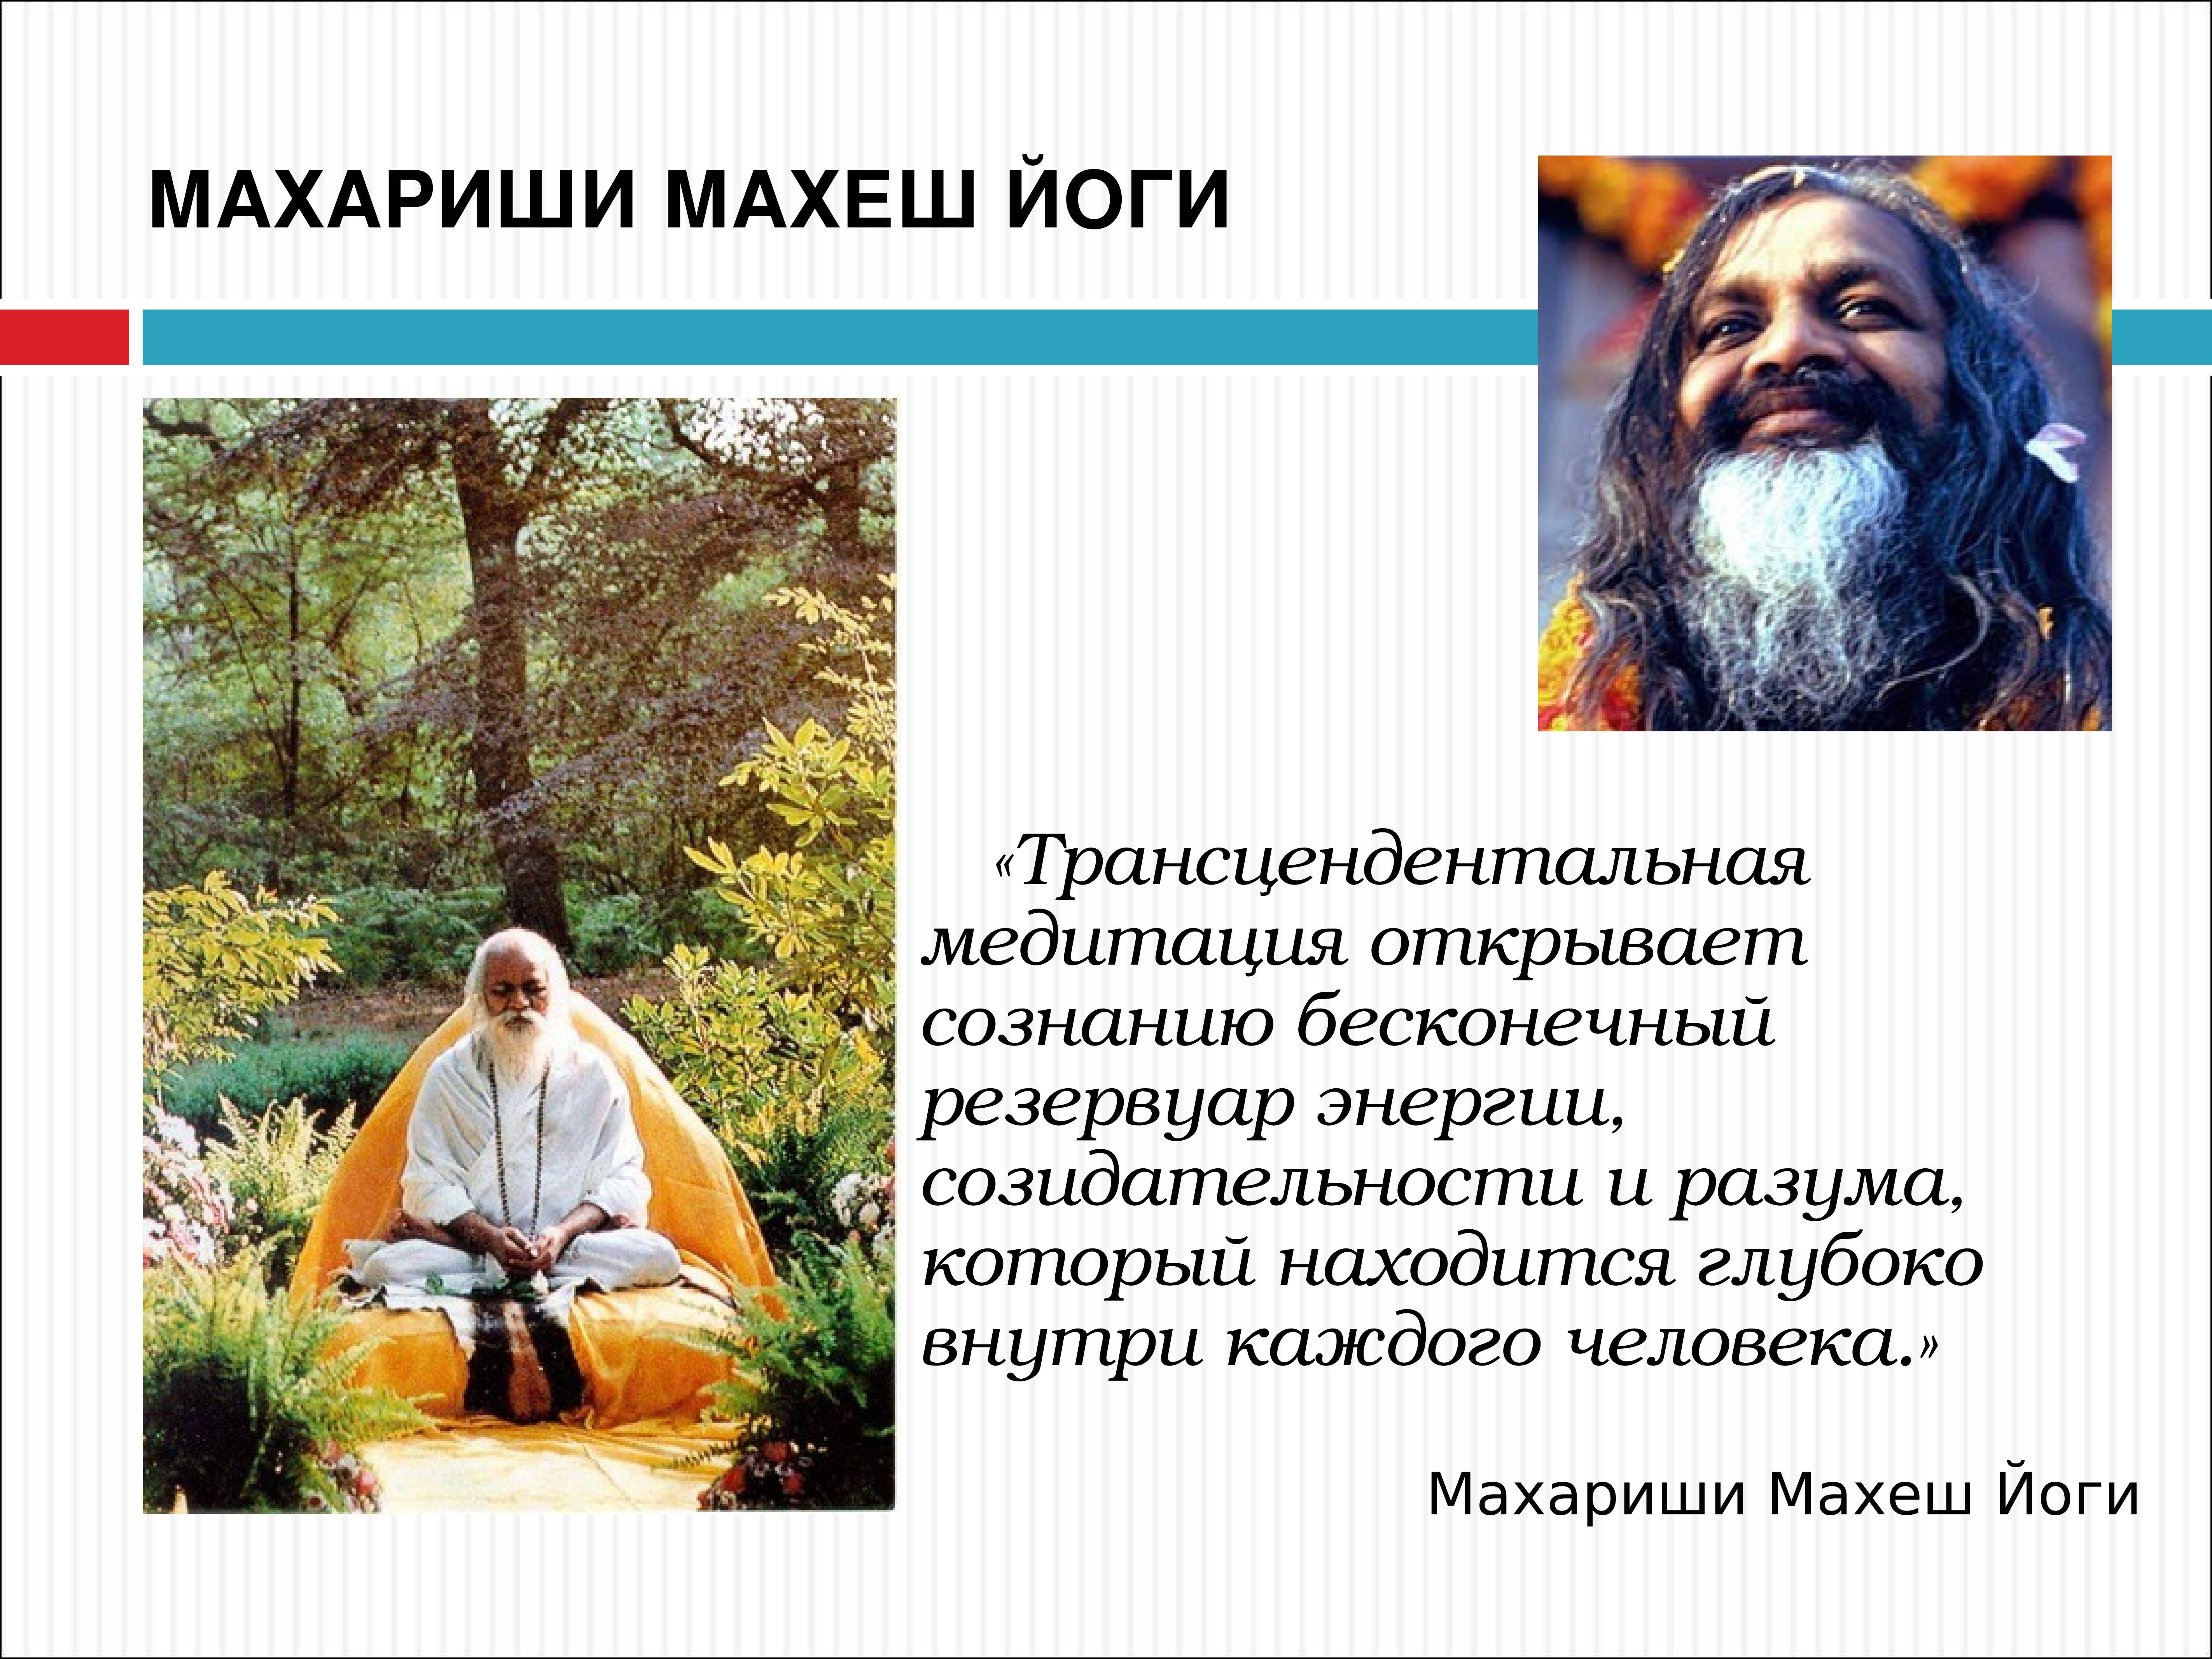 Махариши — ведическая Трансцендентальная Медитация, возрожденная Махеш Йоги